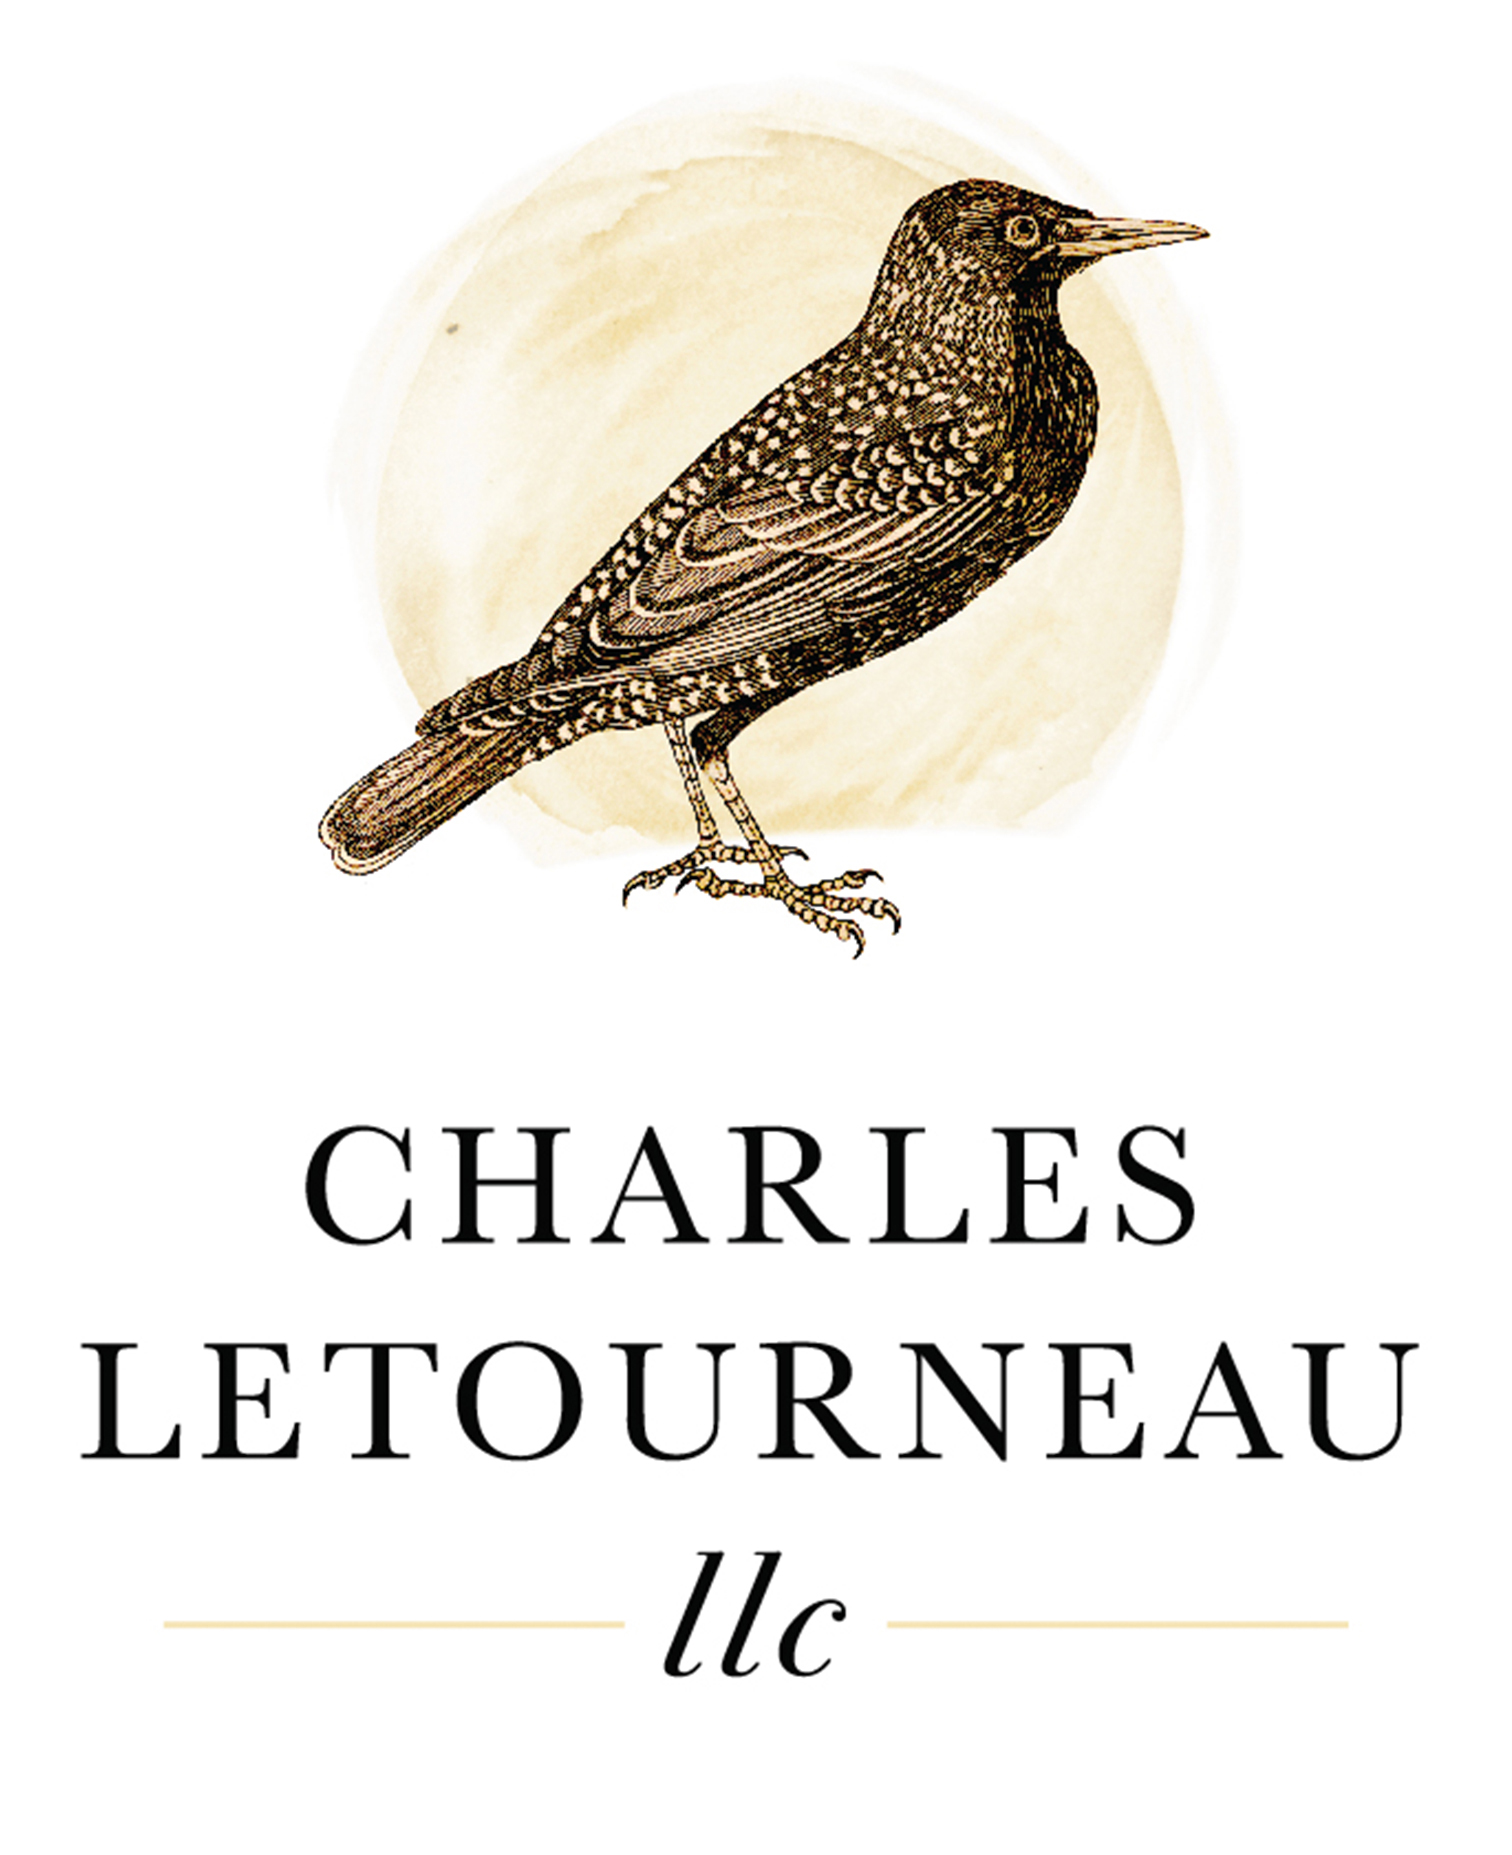 Charles_Letourneau_logo.jpg